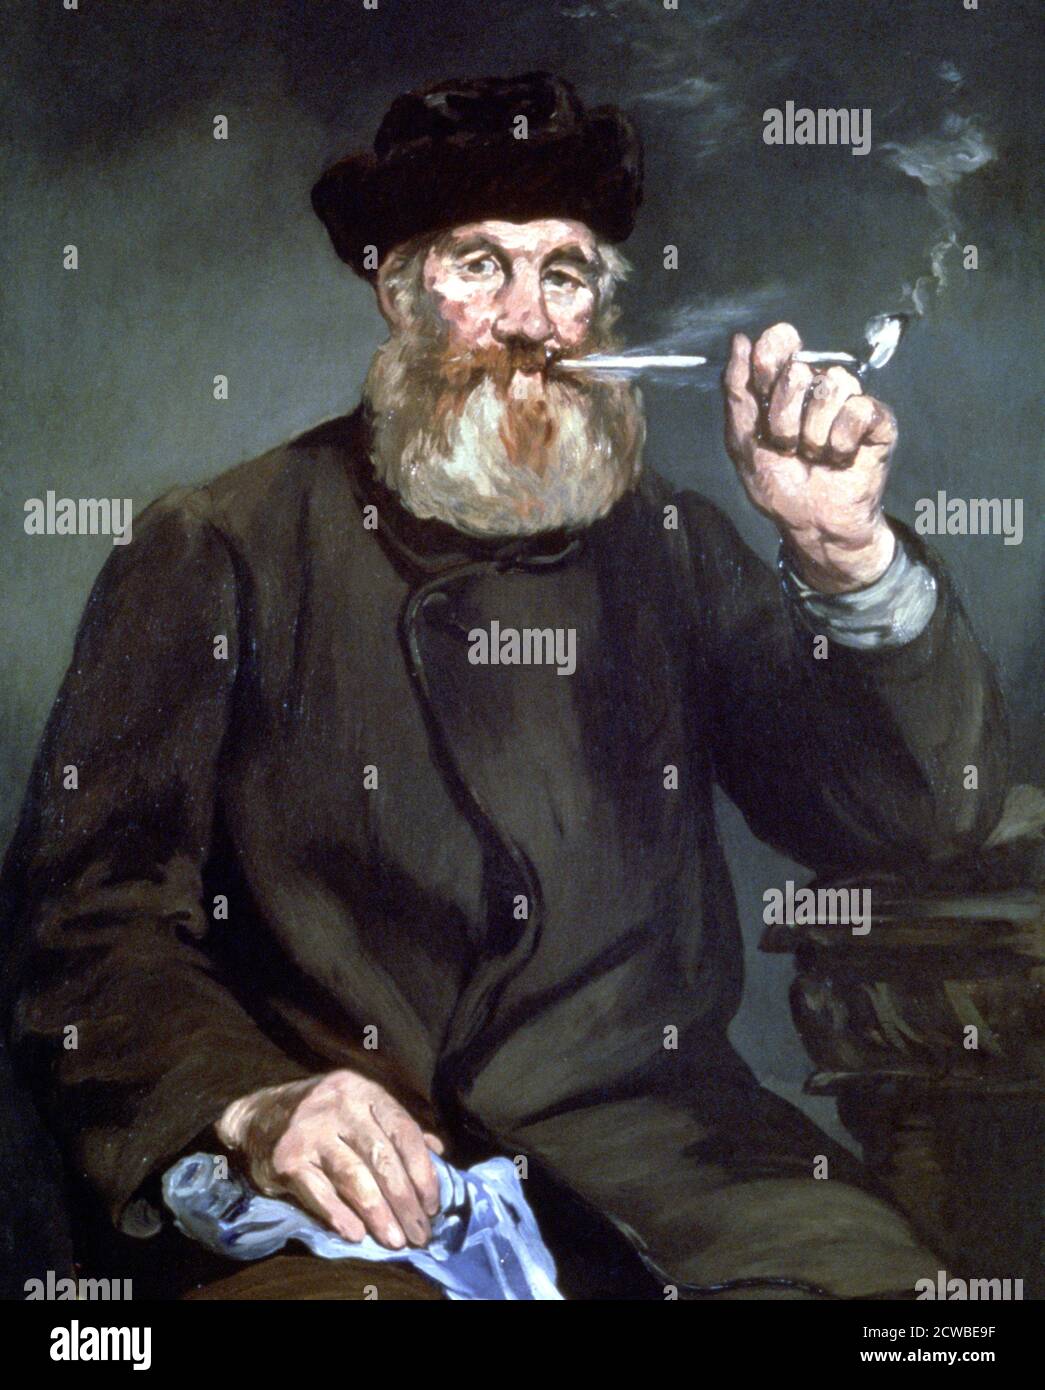 The Smoker', 1866 artiste: Edouard Manet. Edouard Manet(1832-1883) était un peintre moderniste français. Il a été l'un des premiers artistes du XIXe siècle à peindre la vie moderne. Banque D'Images